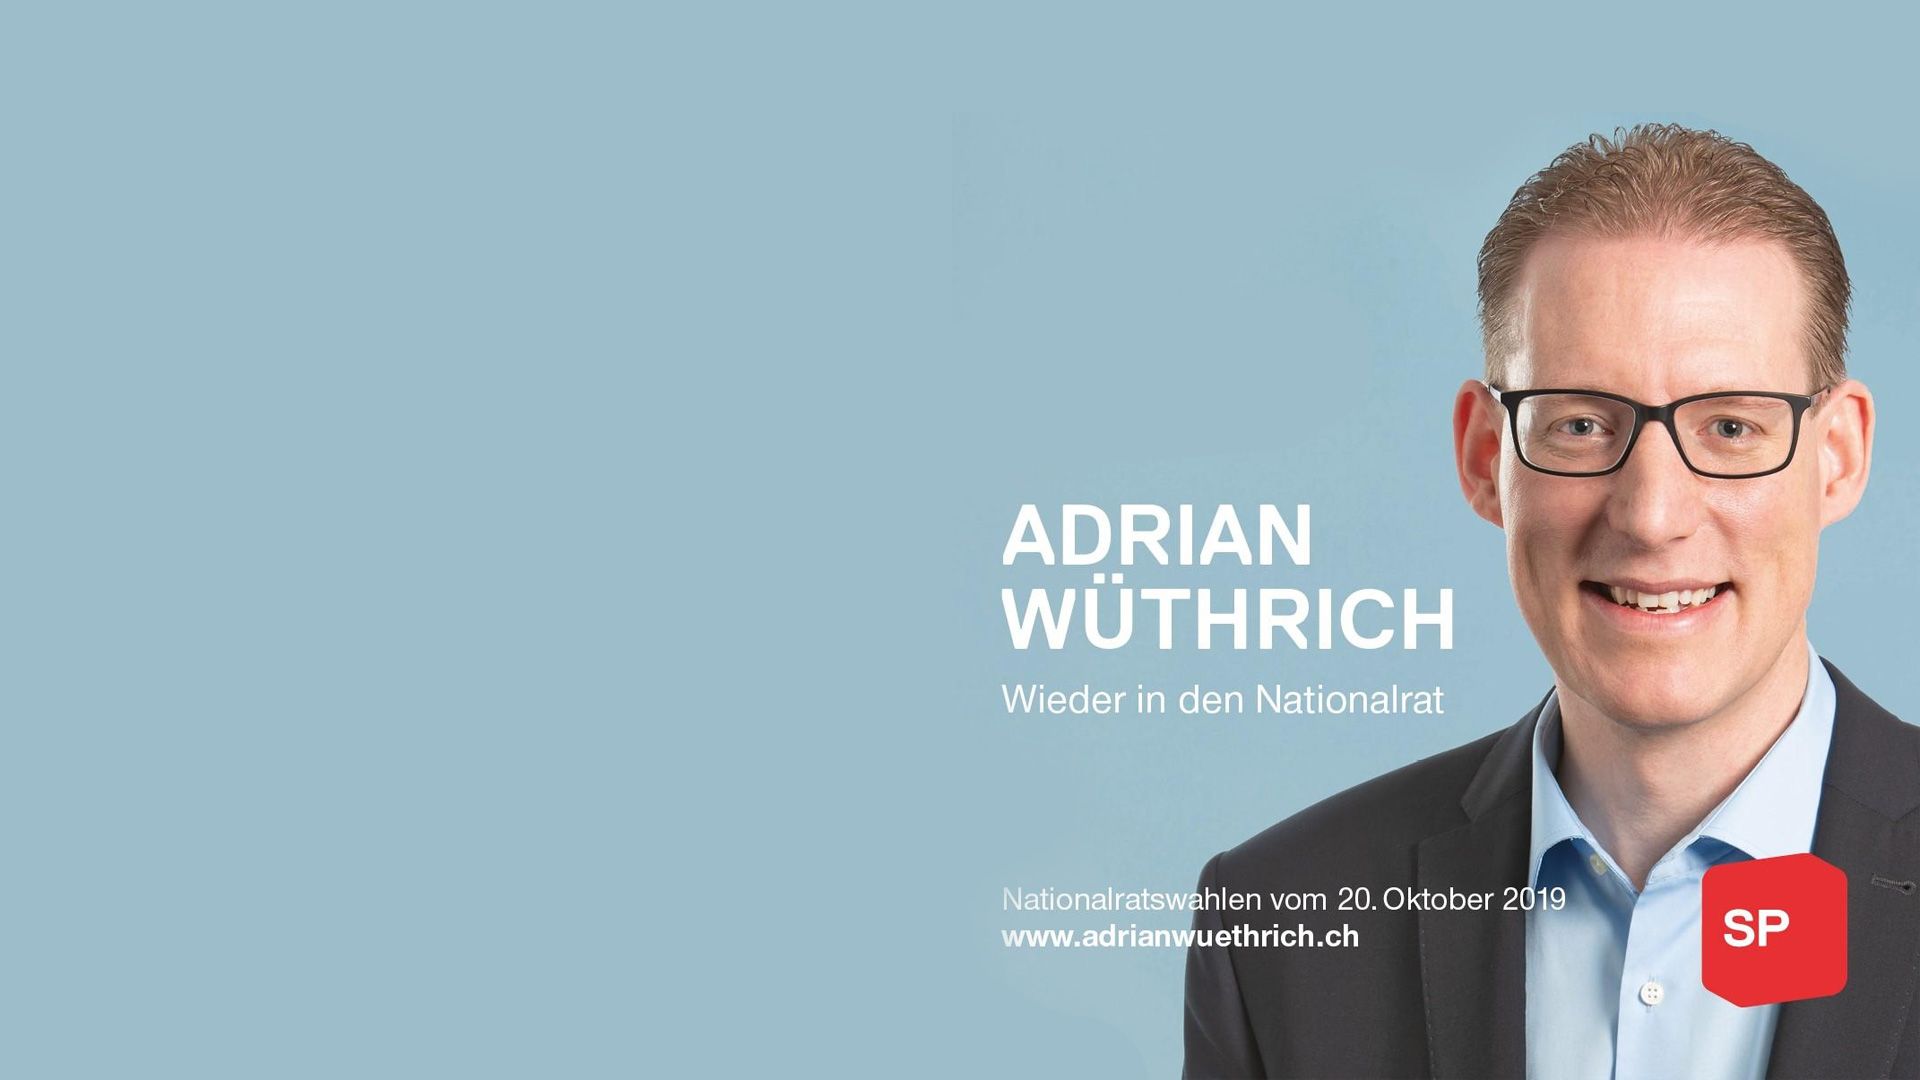 Adrian Wüthrich: Online Vermarktung